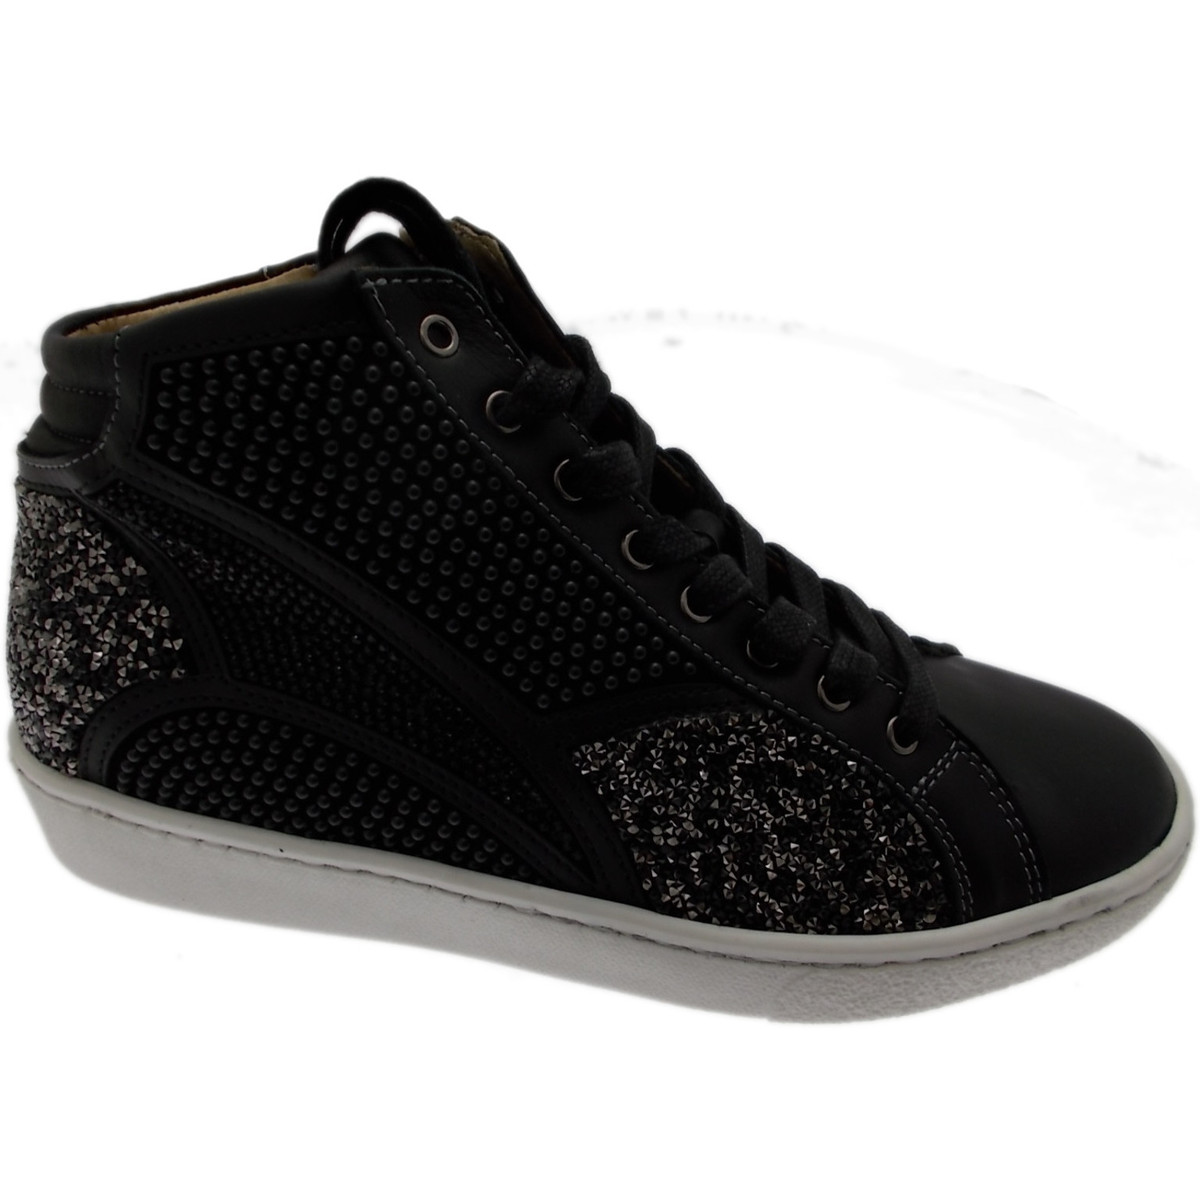 Chaussures black low top sneakers LOC3710ne Noir